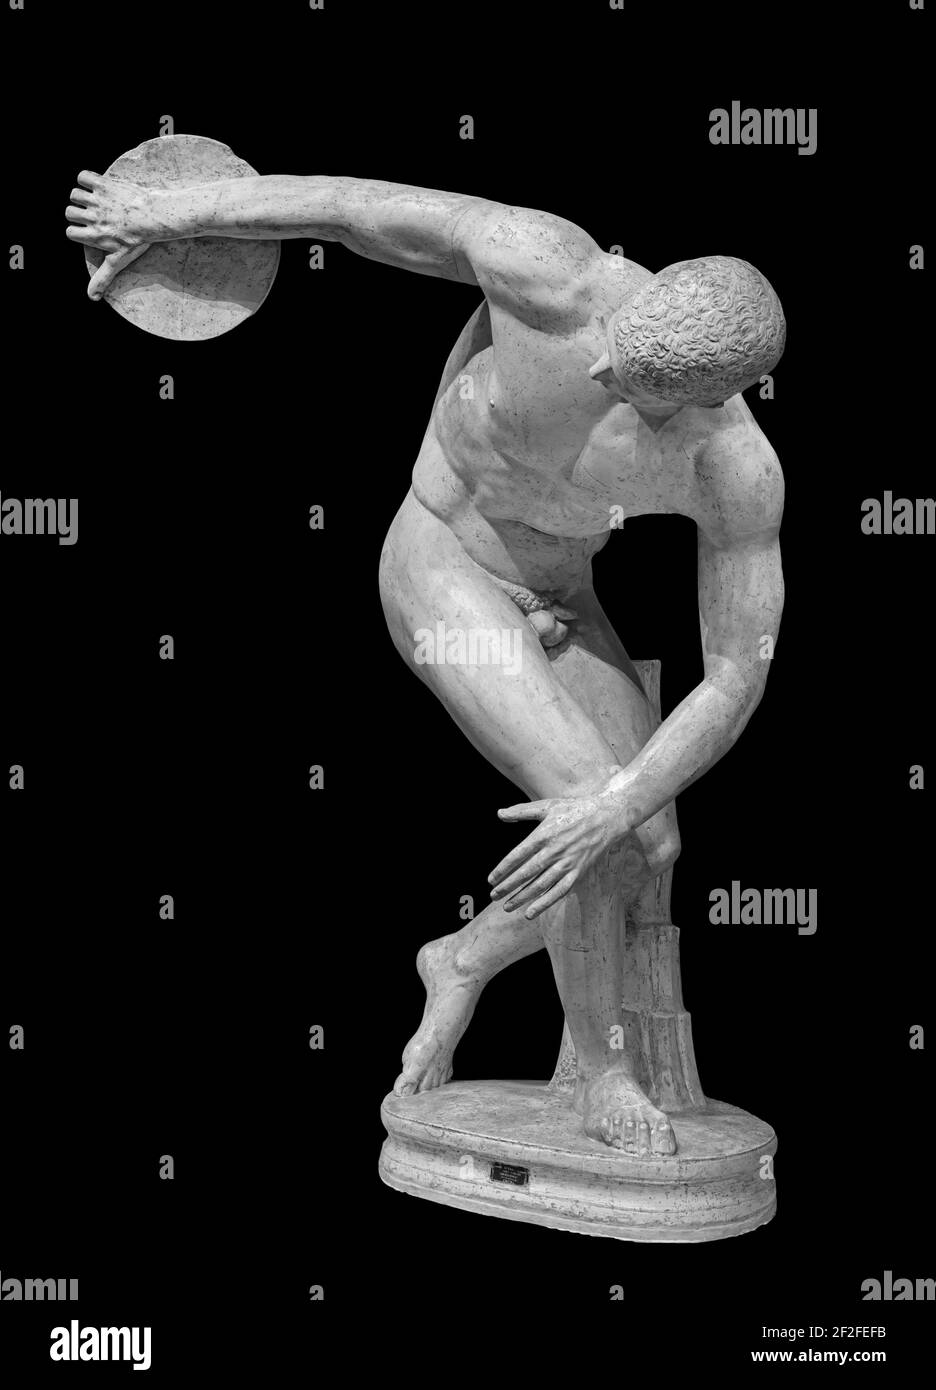 Discus thrameur discobolus une partie des Jeux Olympiques anciens. Une copie romaine de l'original grec de bronze perdu. Isolé sur le noir Banque D'Images